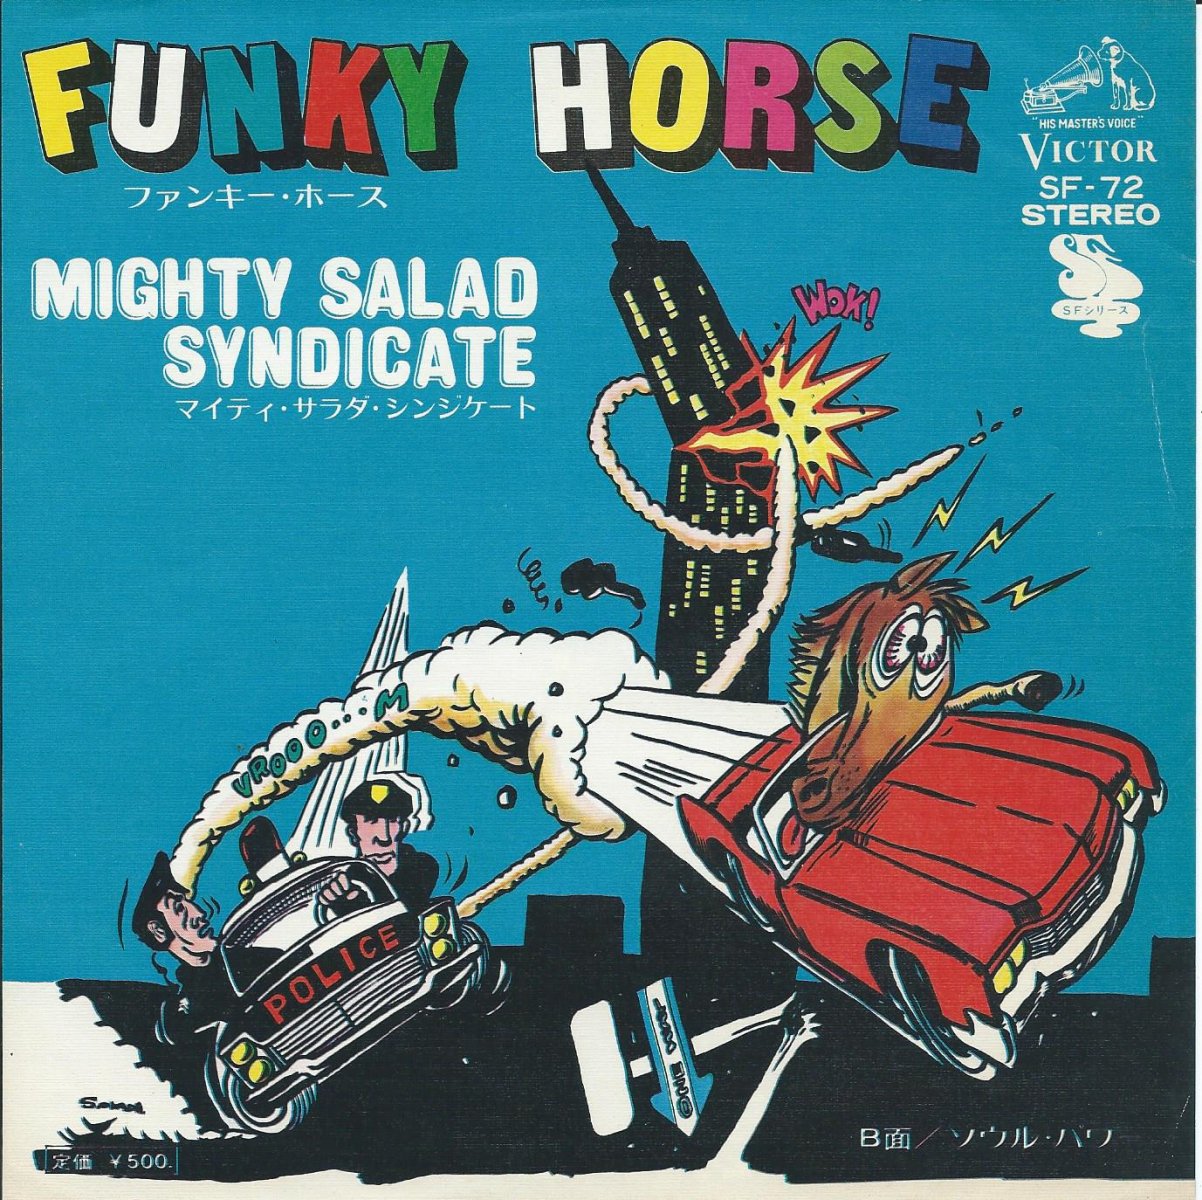 マイティ・サラダ・シンジケート MIGHTY SALAD SYNDICATE / ファンキー・ホース FUNKY HORSE (7